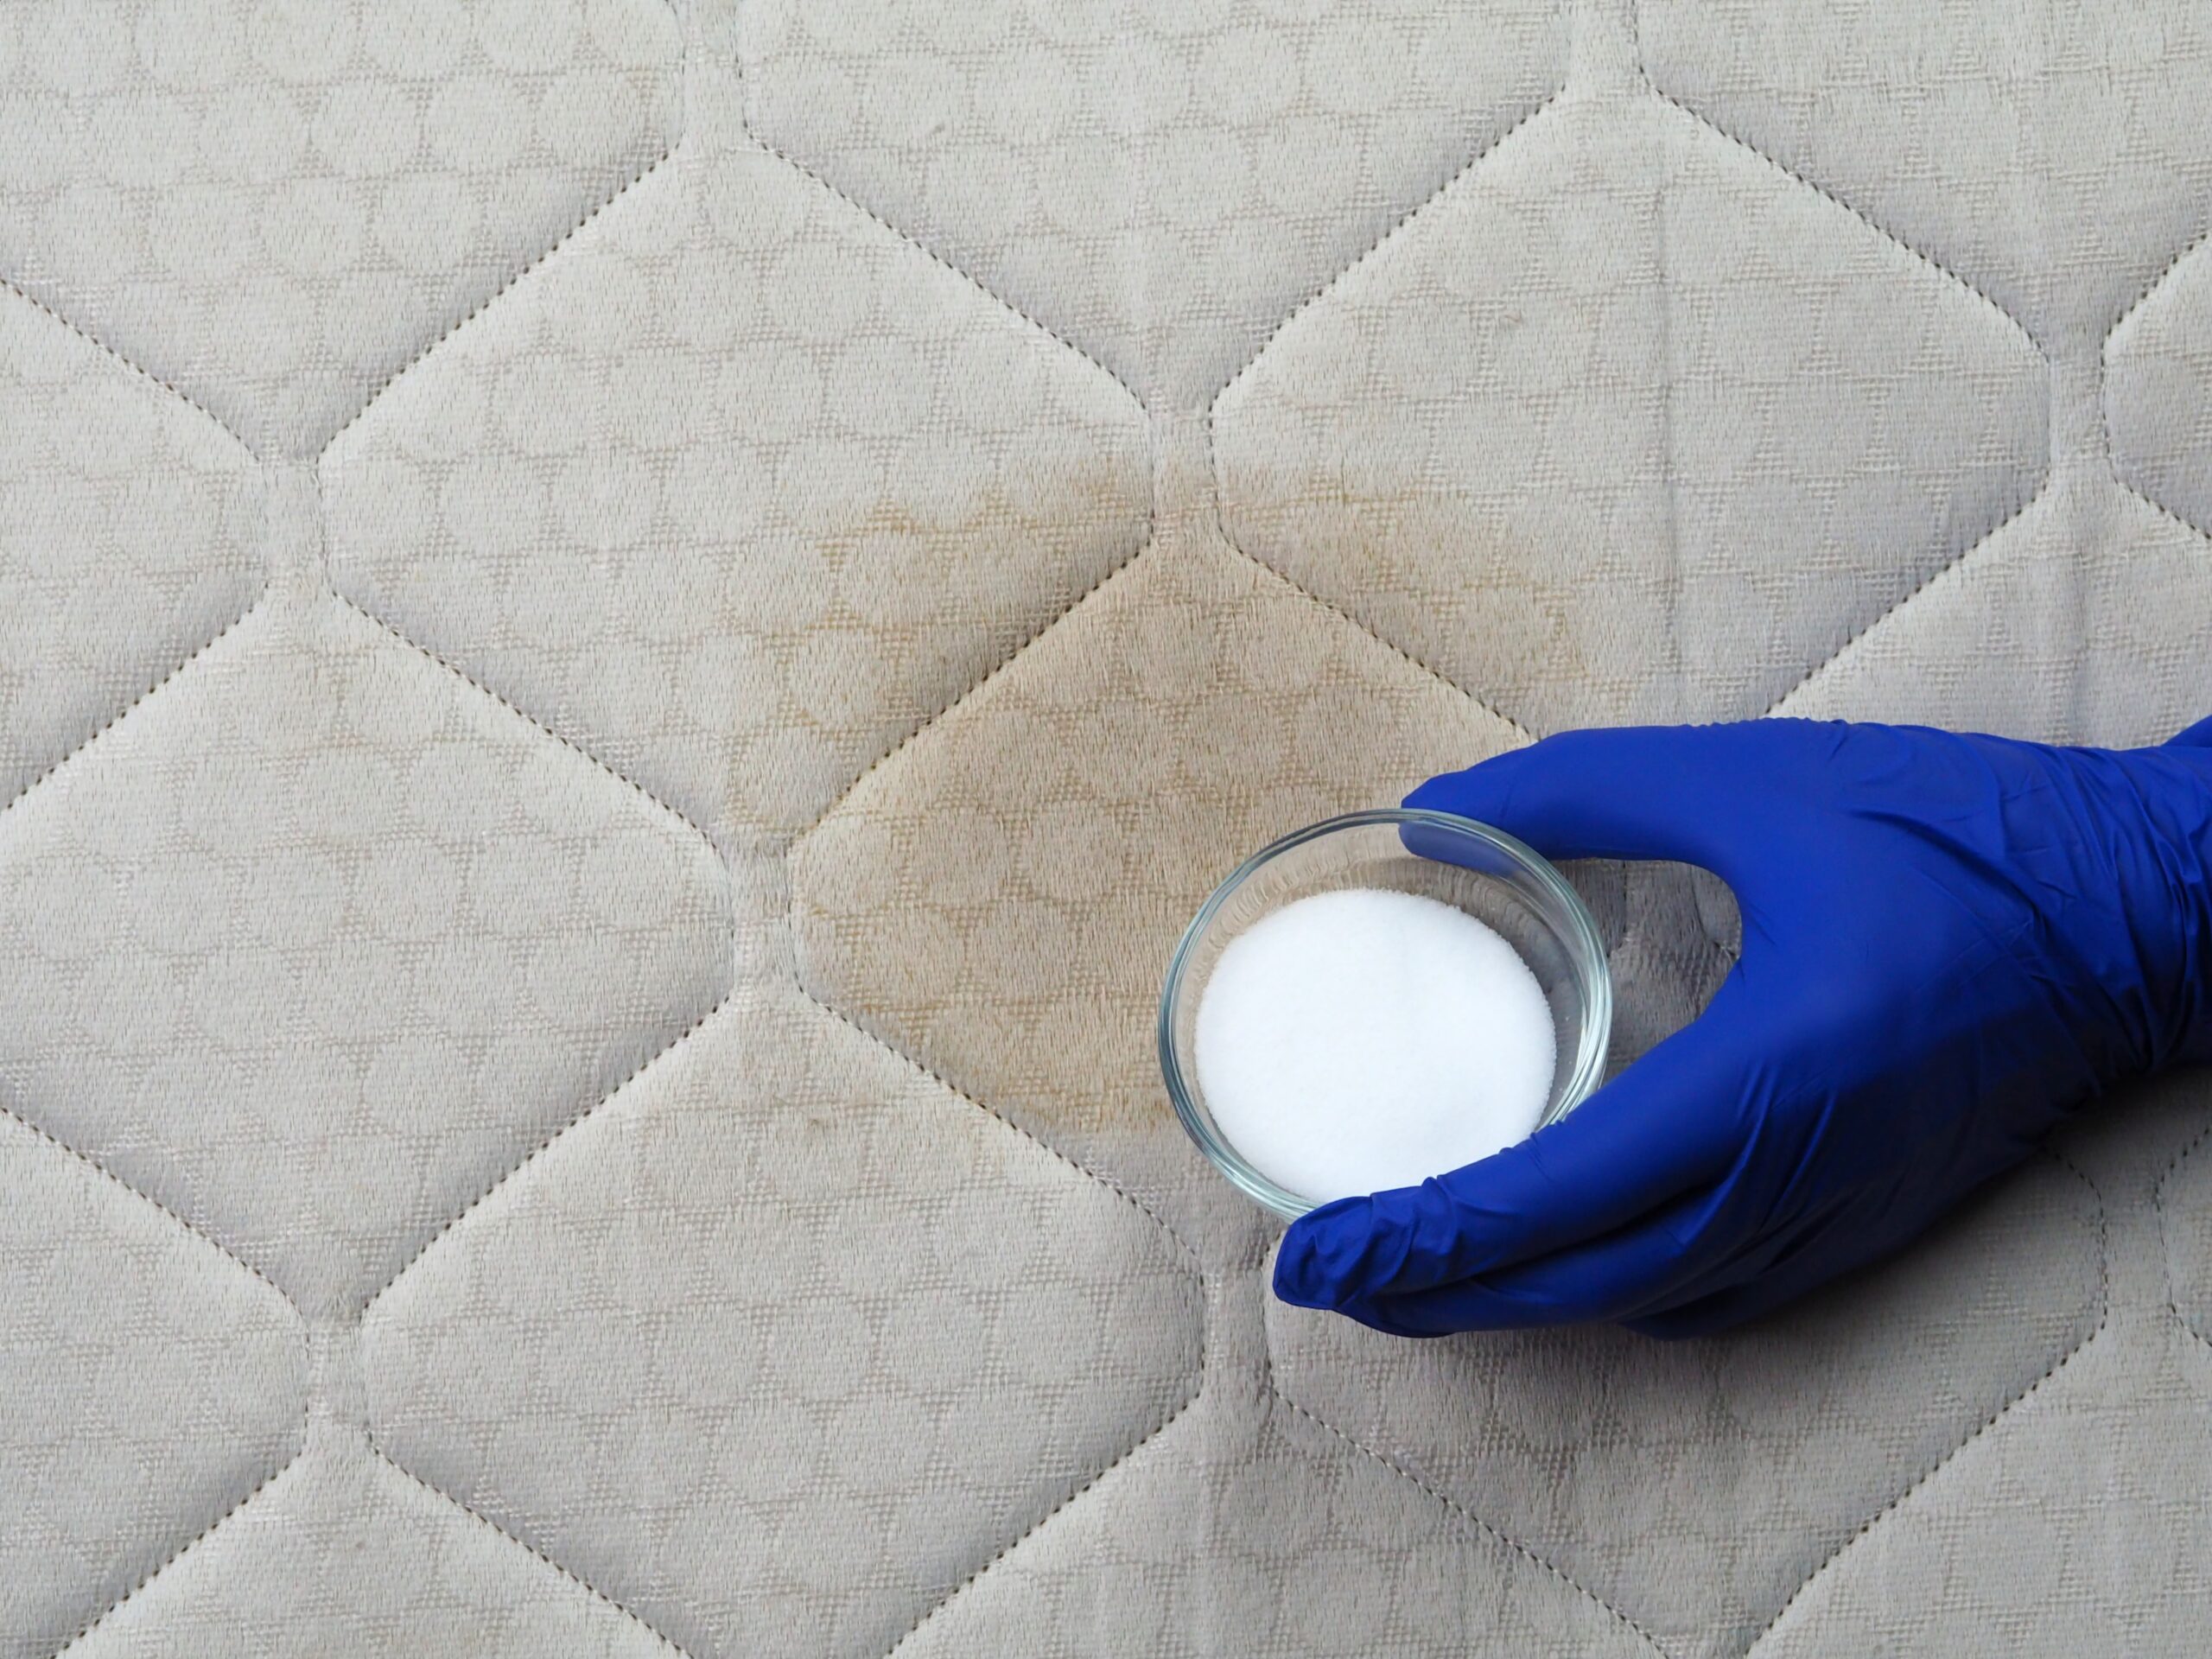 床墊污漬可用小蘇打粉清潔